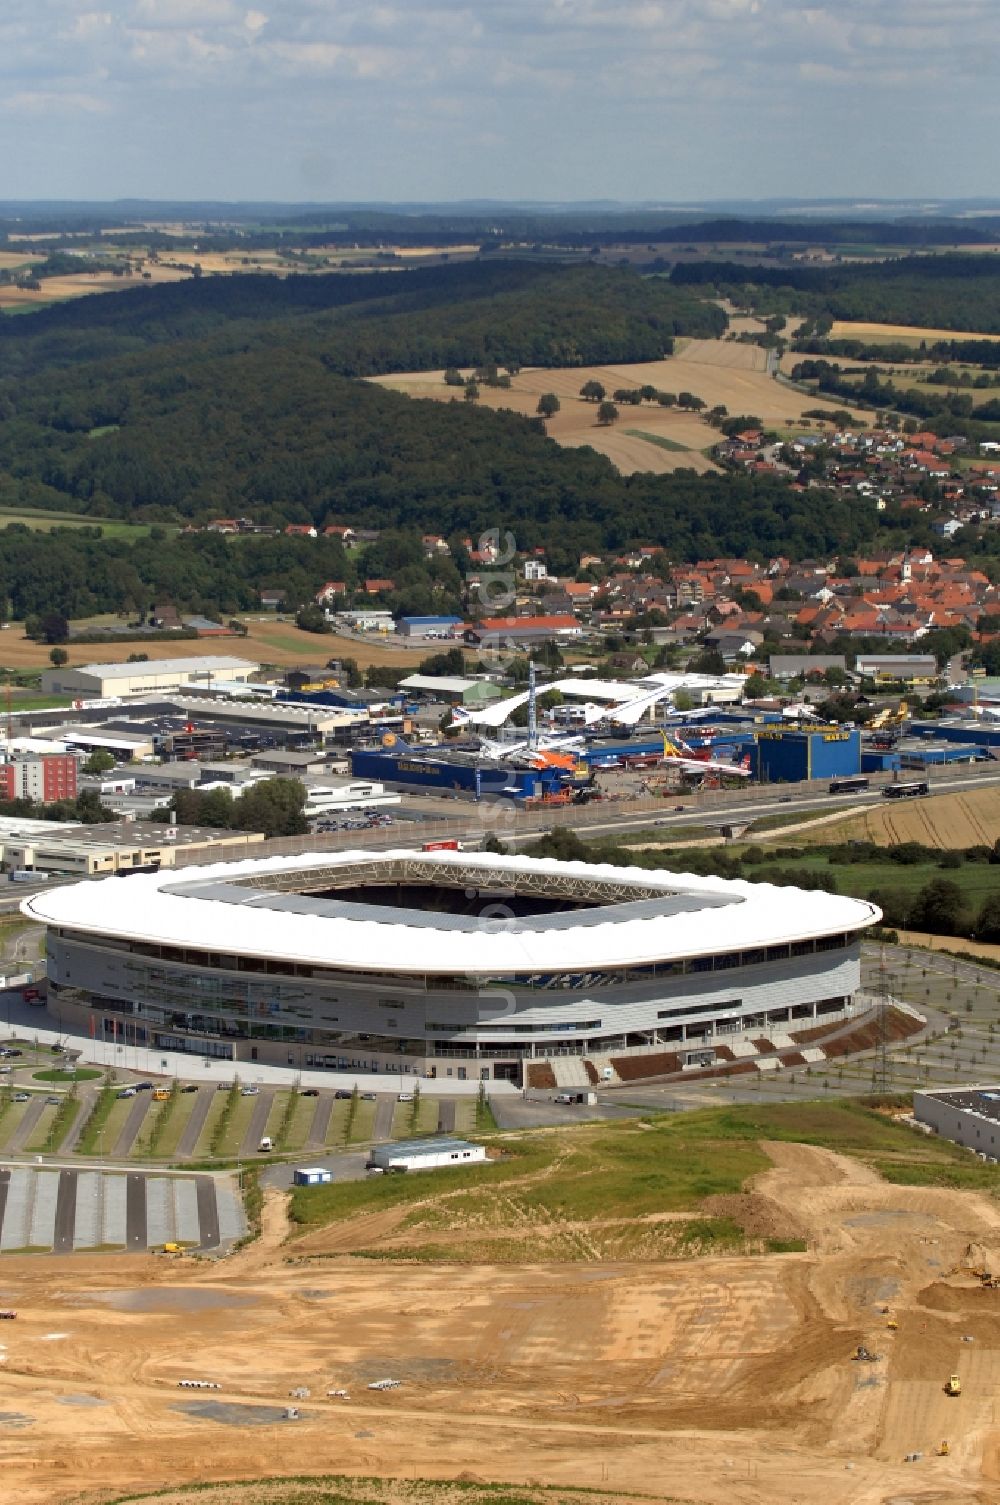 Sinsheim von oben - Sportstätten-Gelände der Arena des Stadion WIRSOL Rhein-Neckar-Arena in Sinsheim im Bundesland Baden-Württemberg